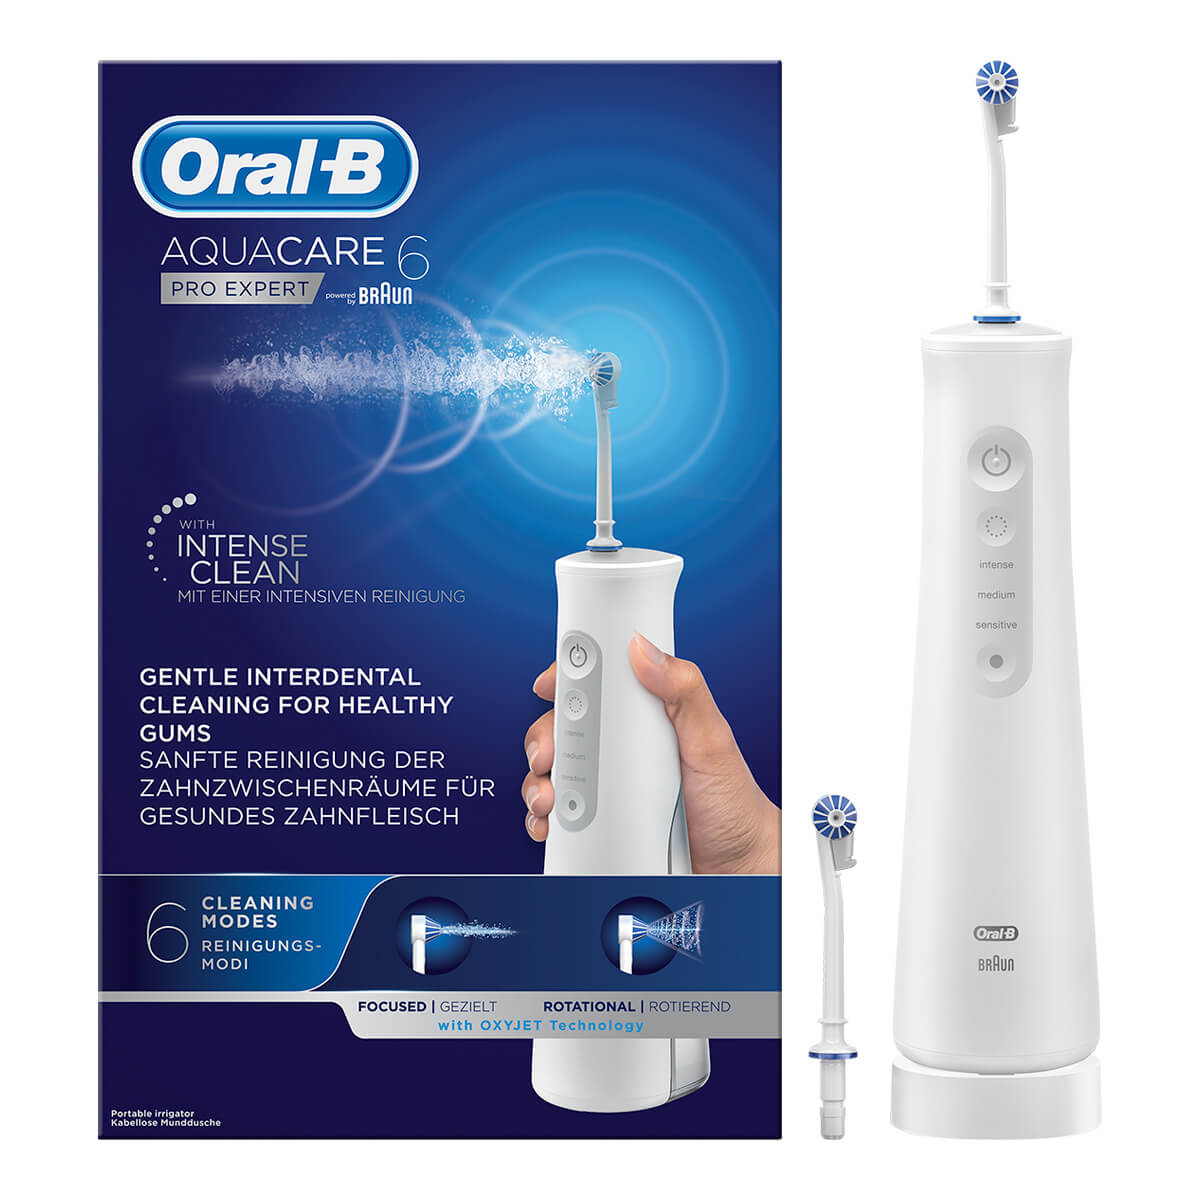 Améliorez votre hygiène buccale quotidienne avec l'hydropulseur Oral-B Aquacare Pro-Expert, avec technologie Oxyjet pour un soin des gencives vivifiant. Un hydropulseur portable pour prendre soin de vos gencives - même en voyage. A utiliser en complément du brossage. Oral-B, la marque de brosse à dents la plus utilisée par les dentistes eux-mêmes dans le monde.Technologie Oxyjet : enrichie à l’eau avec des microbulles pour une action de nettoyage intensifiéeMode unique à la demande : Pour libérer le jet d’eau seulement si nécessaire 3 intensités : personnalisez votre nettoyage avec des pressions d’eau intense, normale, ou douceur2 types de jets : choisissez un jet d’eau ciblé ou rotatifContenu: 1 hydropulseur, 1 chargeur, 2 canules Oxyjet